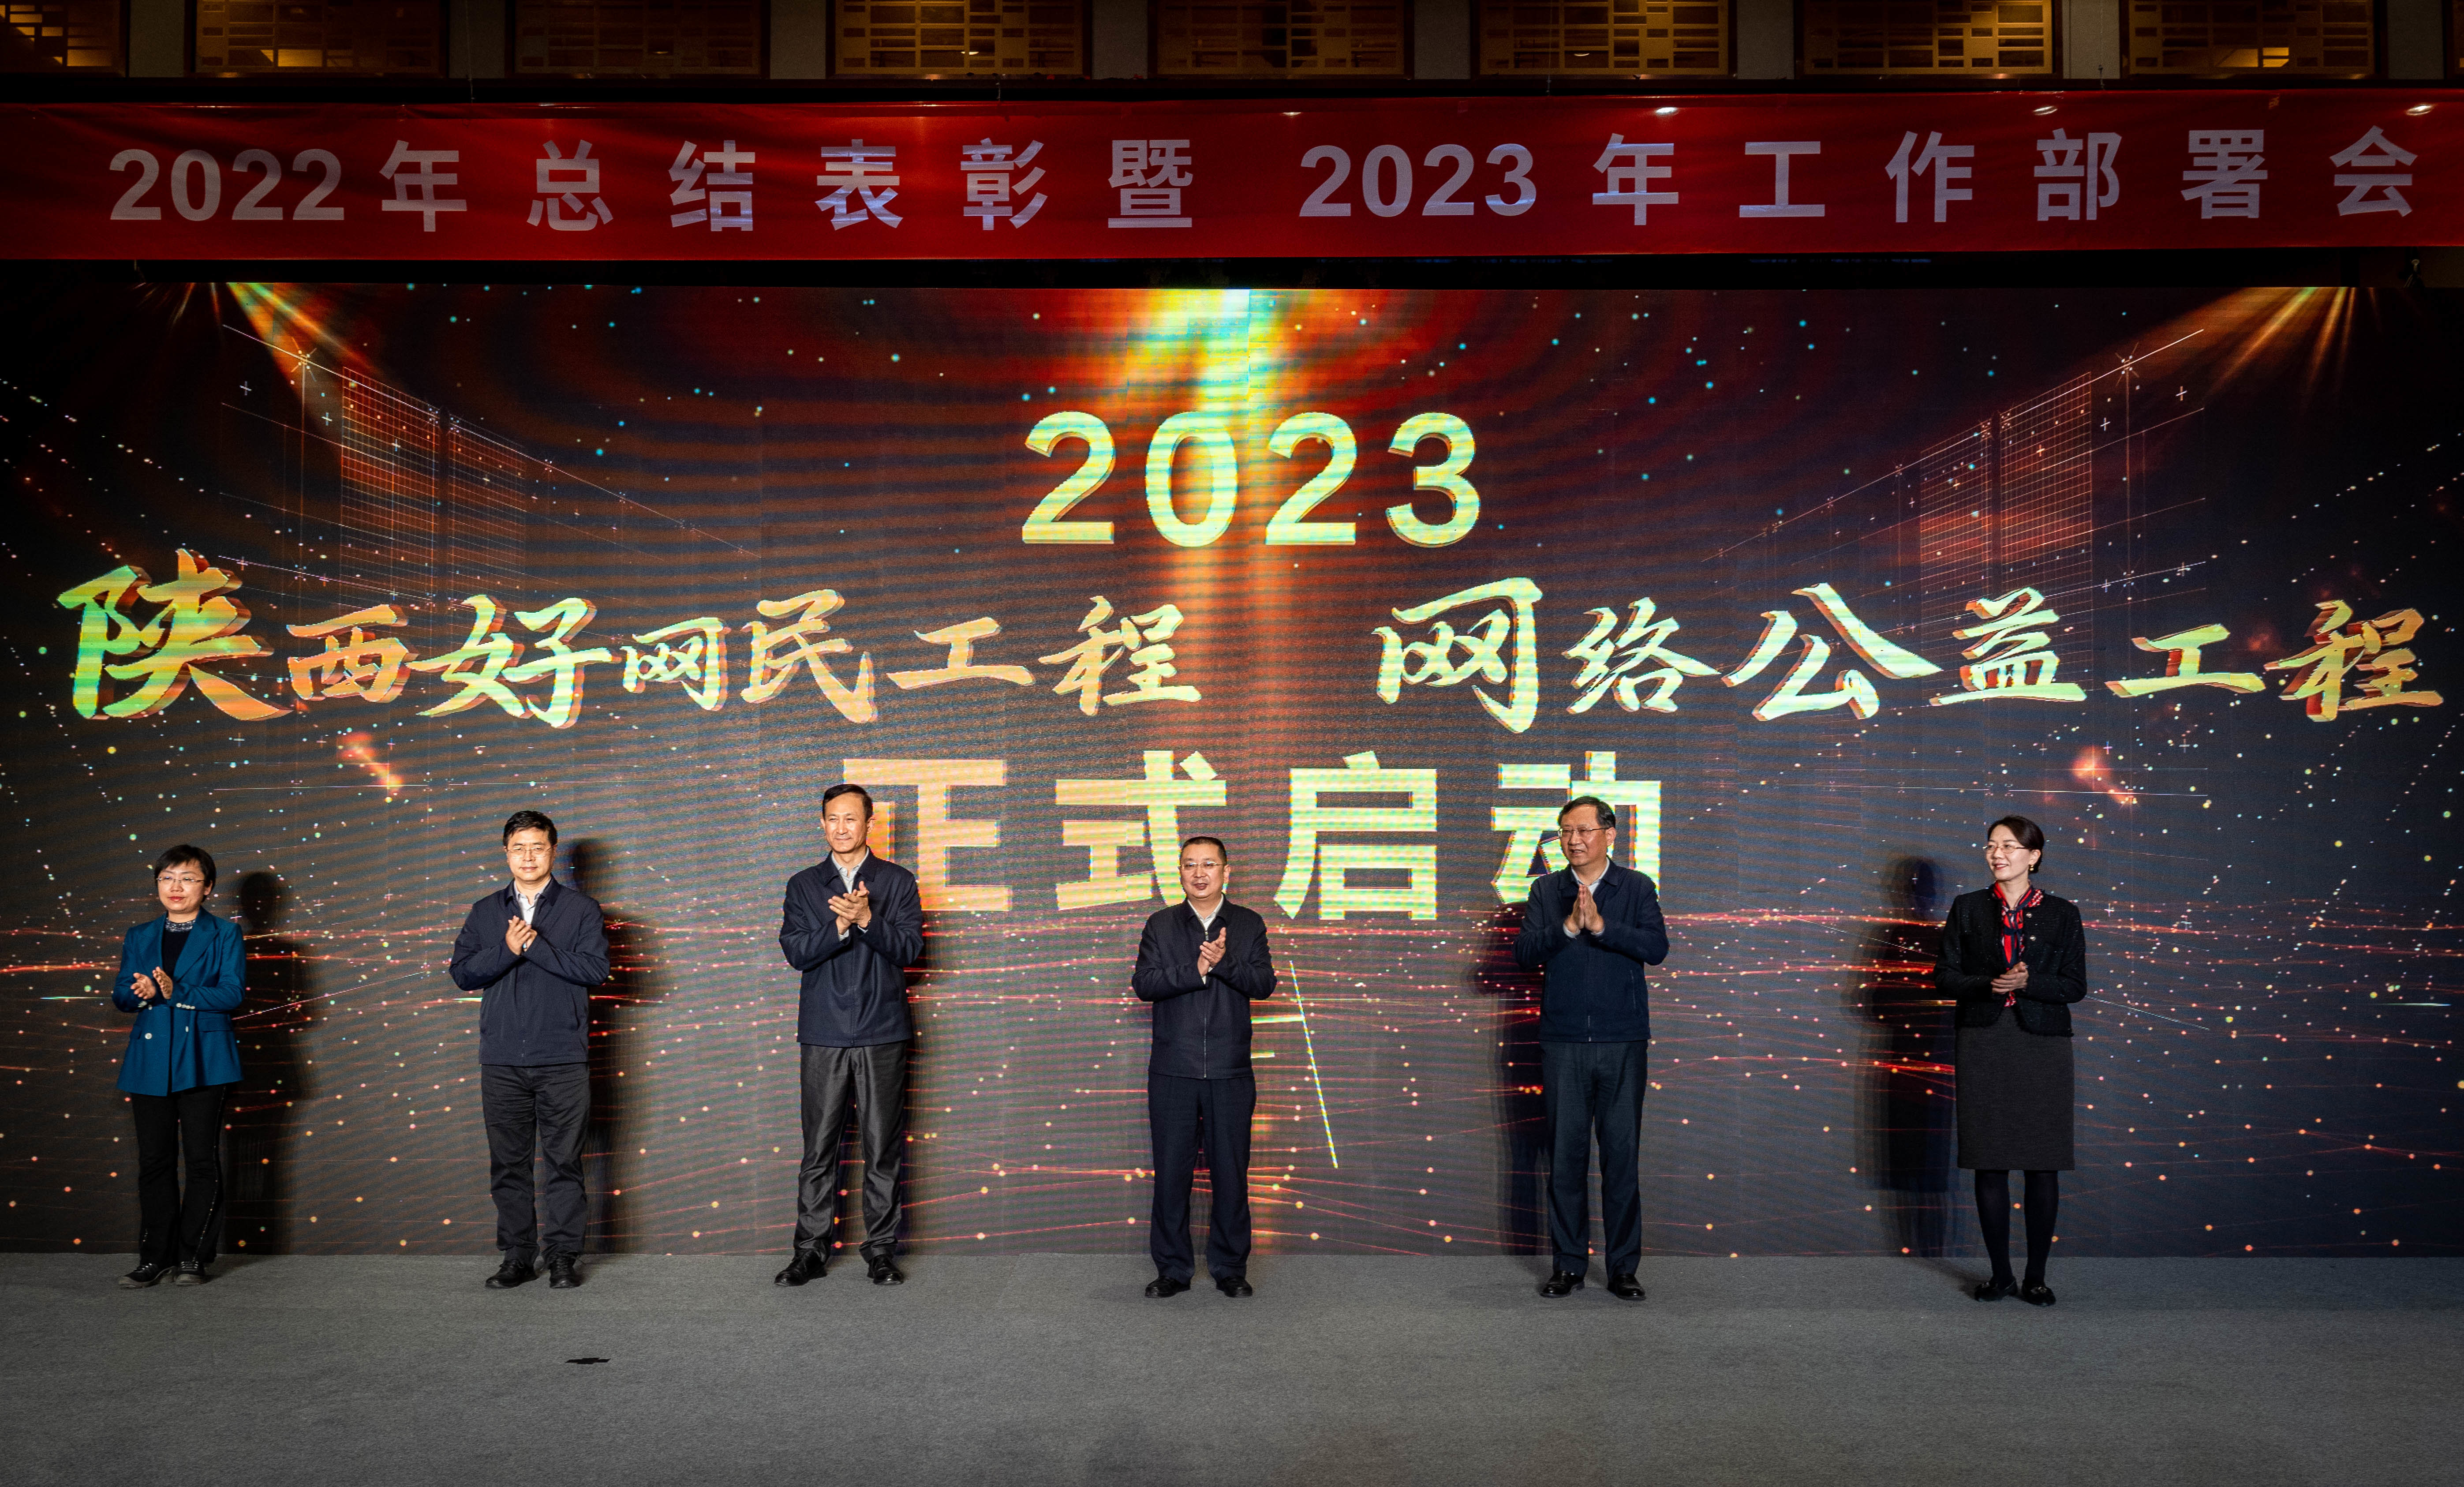 2023陕西好网民工程、网络公益工程正式启动